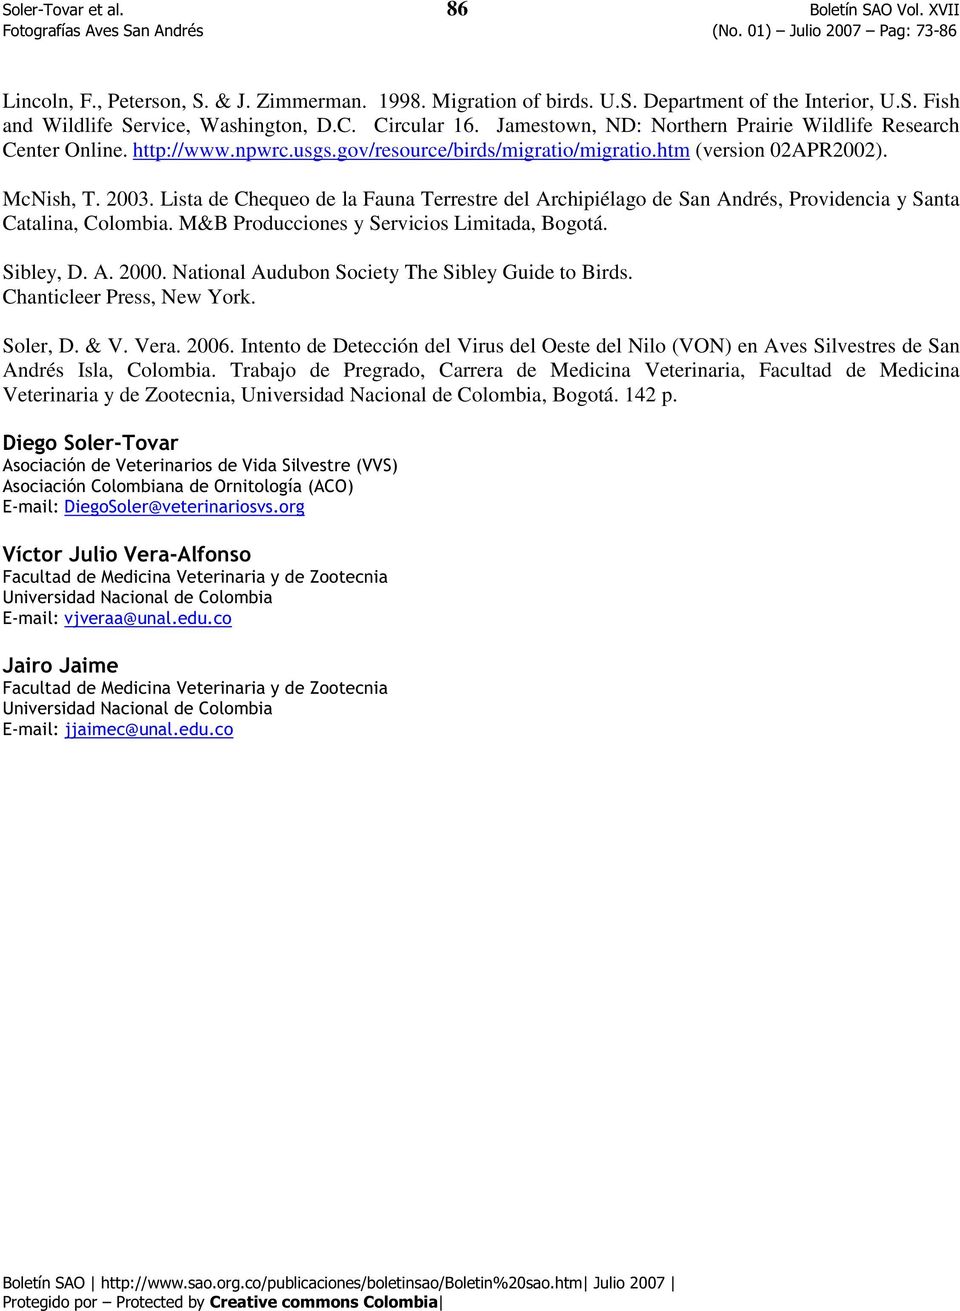 Lista de Chequeo de la Fauna Terrestre del Archipiélago de San Andrés, Providencia y Santa Catalina, Colombia. M&B Producciones y Servicios Limitada, Bogotá. Sibley, D. A. 2000.